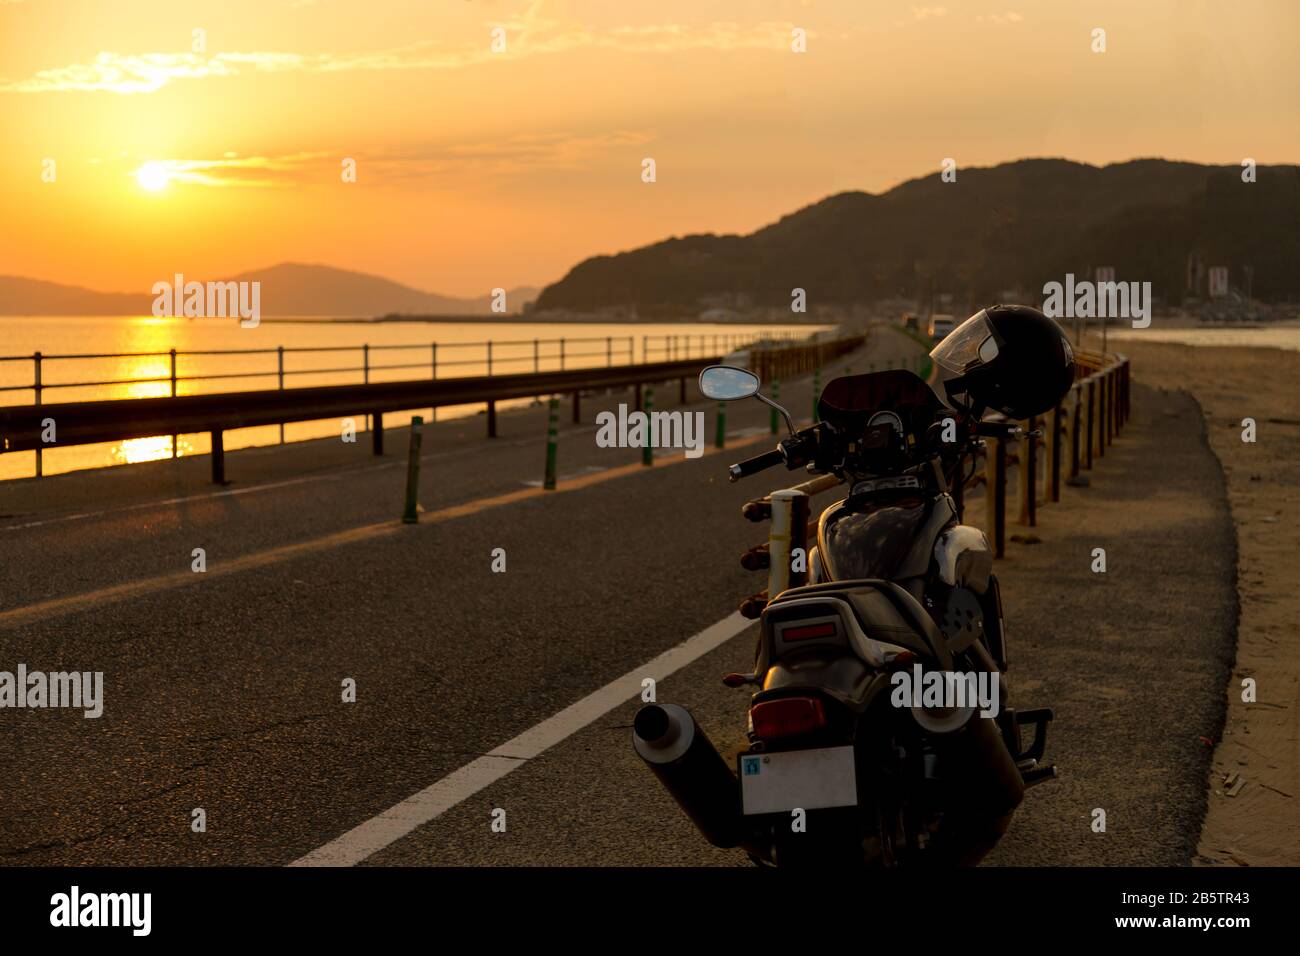 Shooting a Yamaha VMAX motorcycle in Fukuoka, Japan Stock Photo